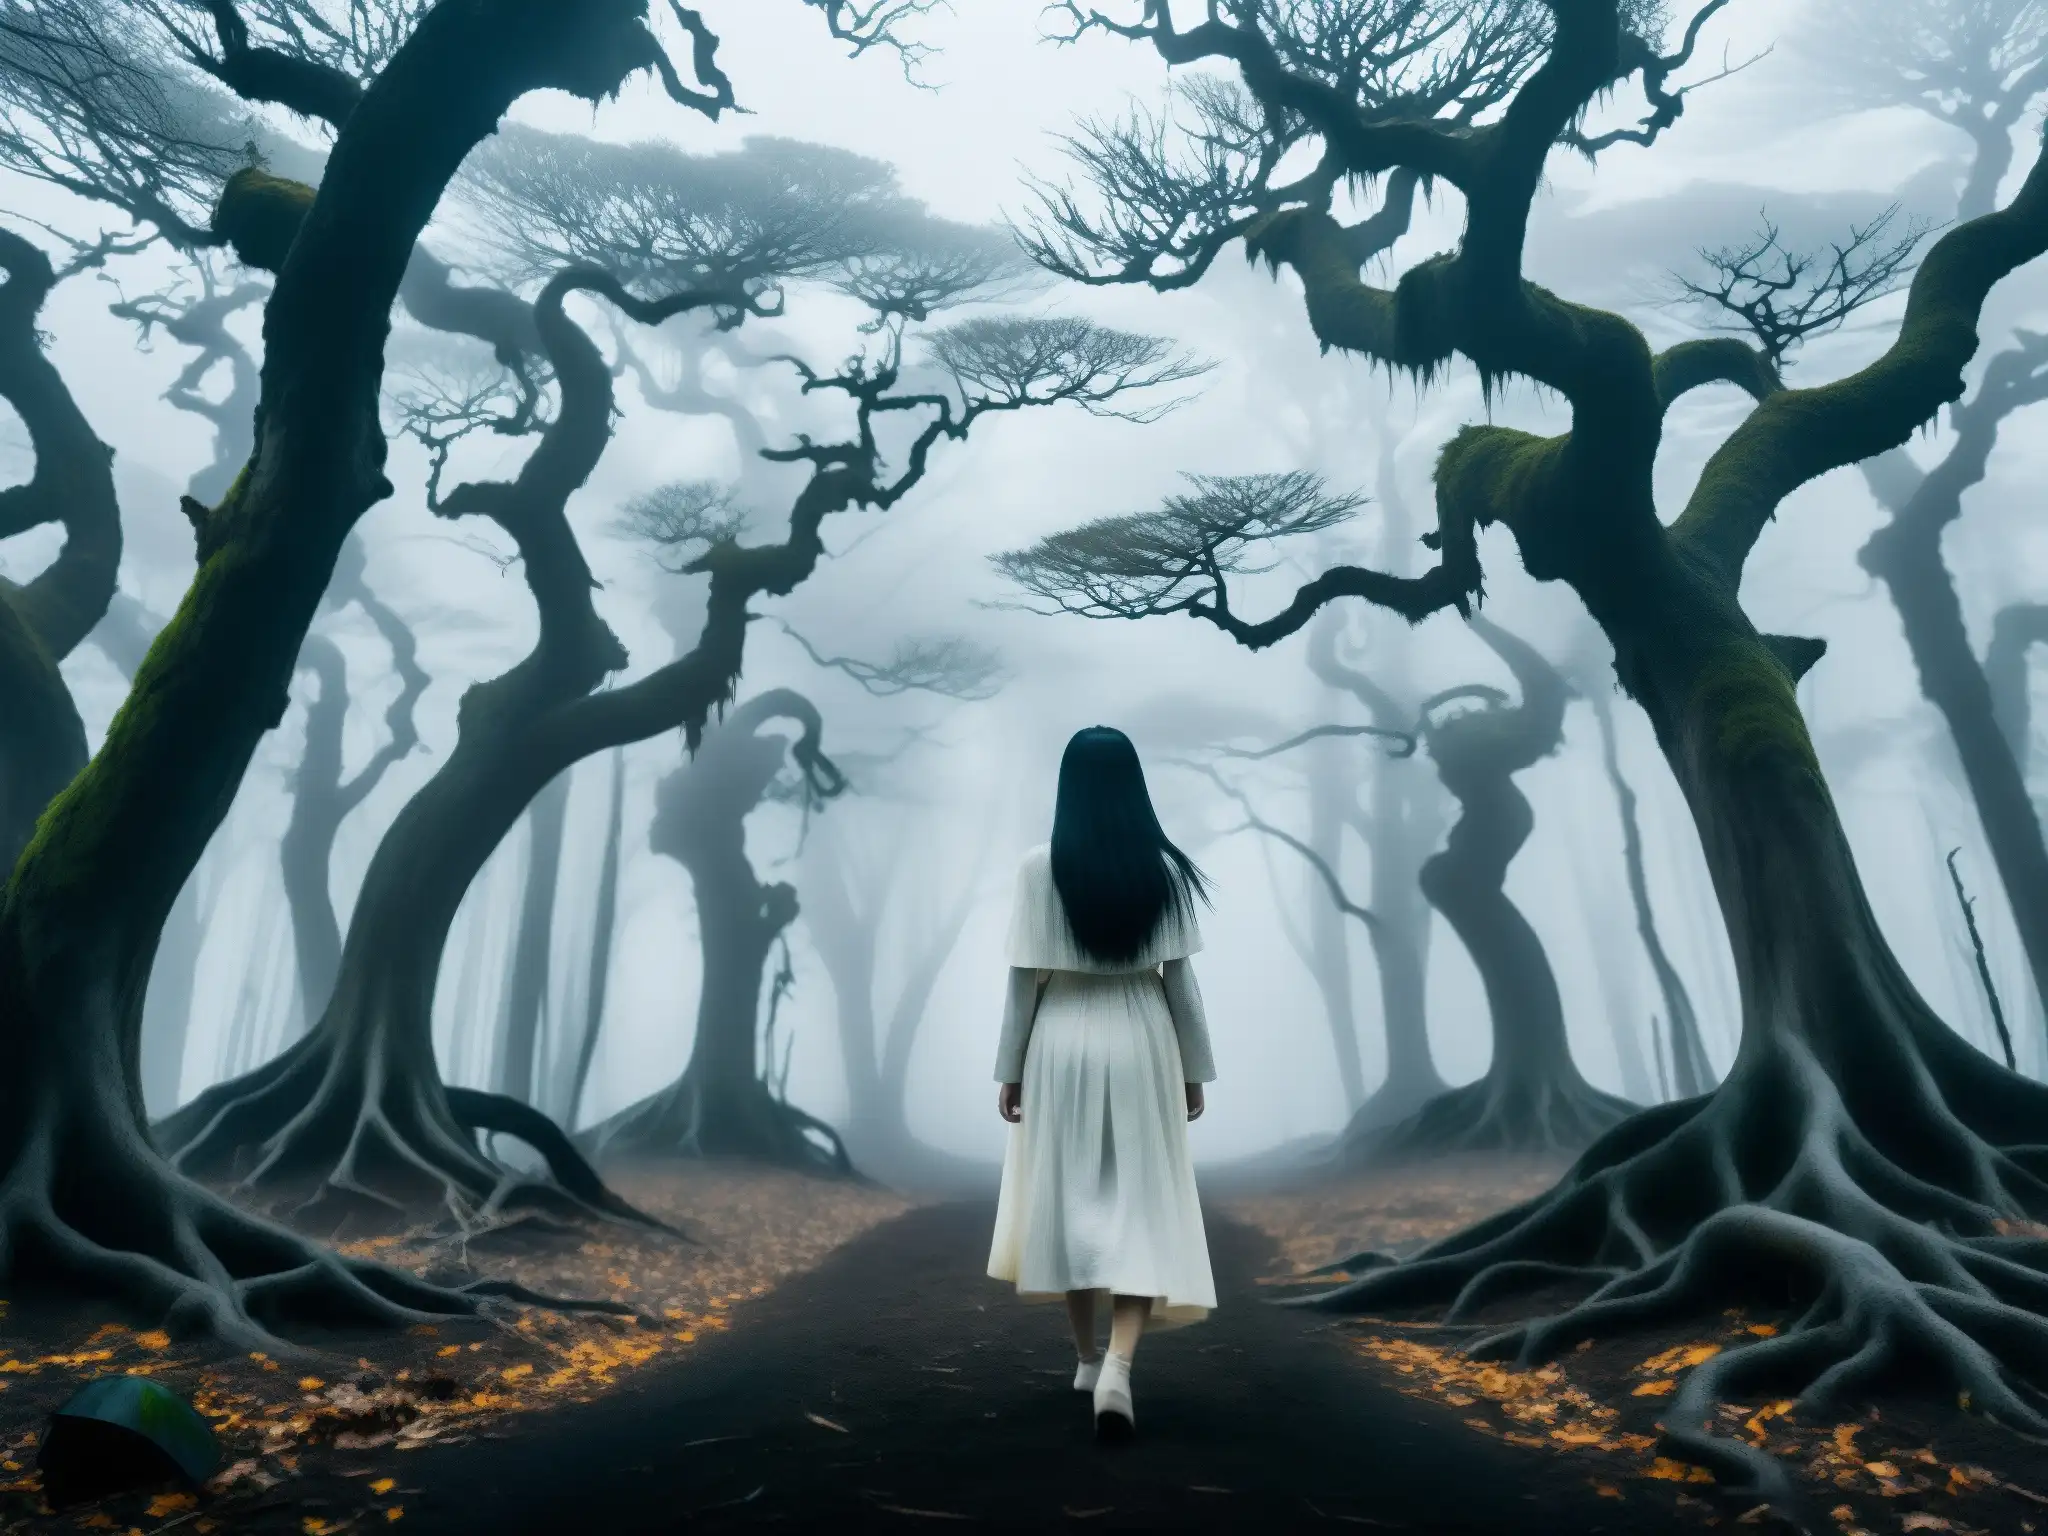 Un bosque misterioso envuelto en niebla con árboles retorcidos, donde una figura con una sonrisa inquietante encarna la leyenda de Kuchisakeonna